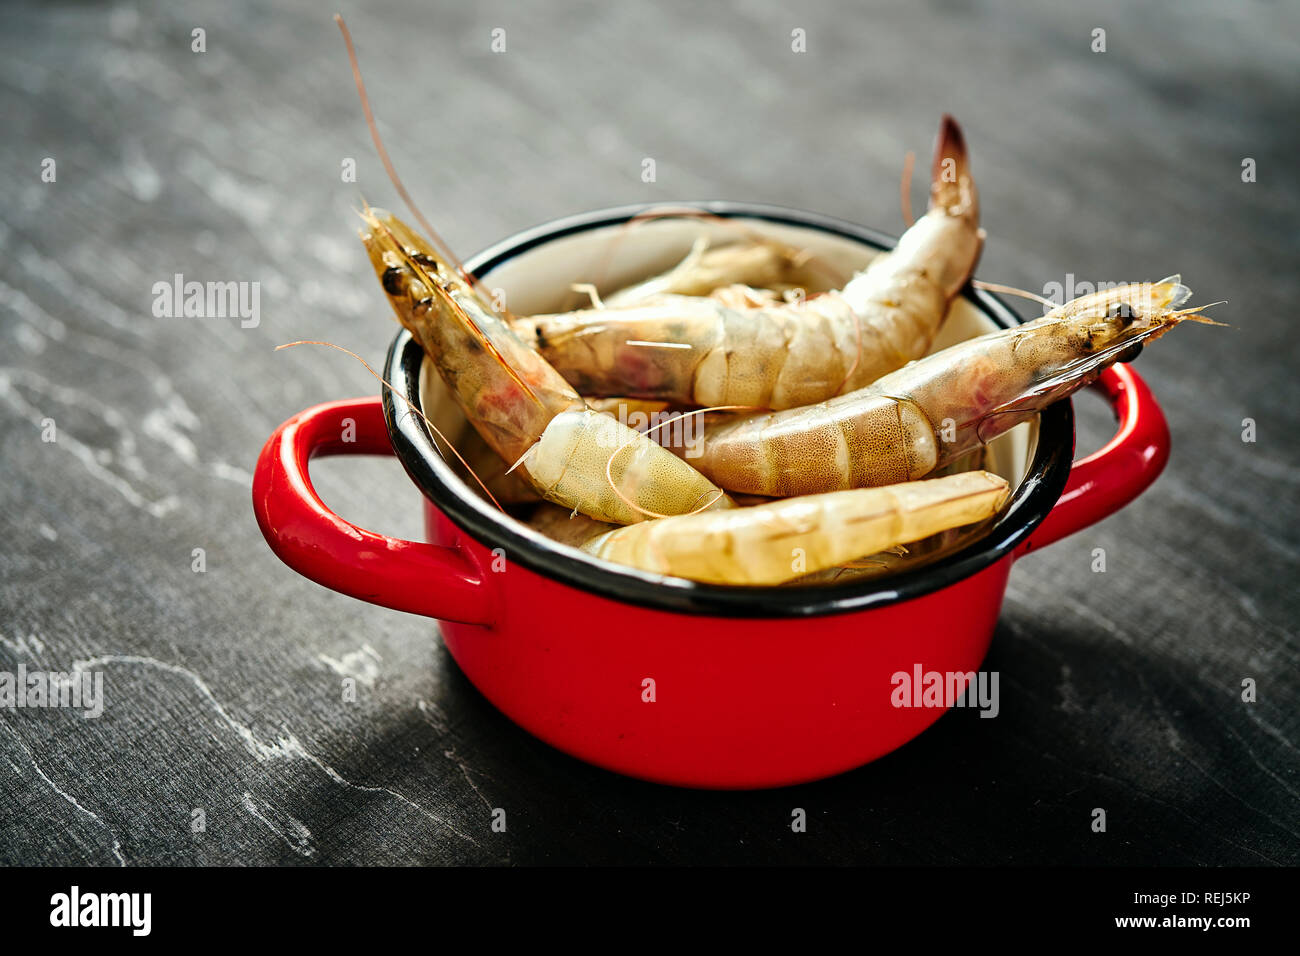 Délicieux crus frais crevettes géantes dans un pot rouge sur une table en bois noir Banque D'Images